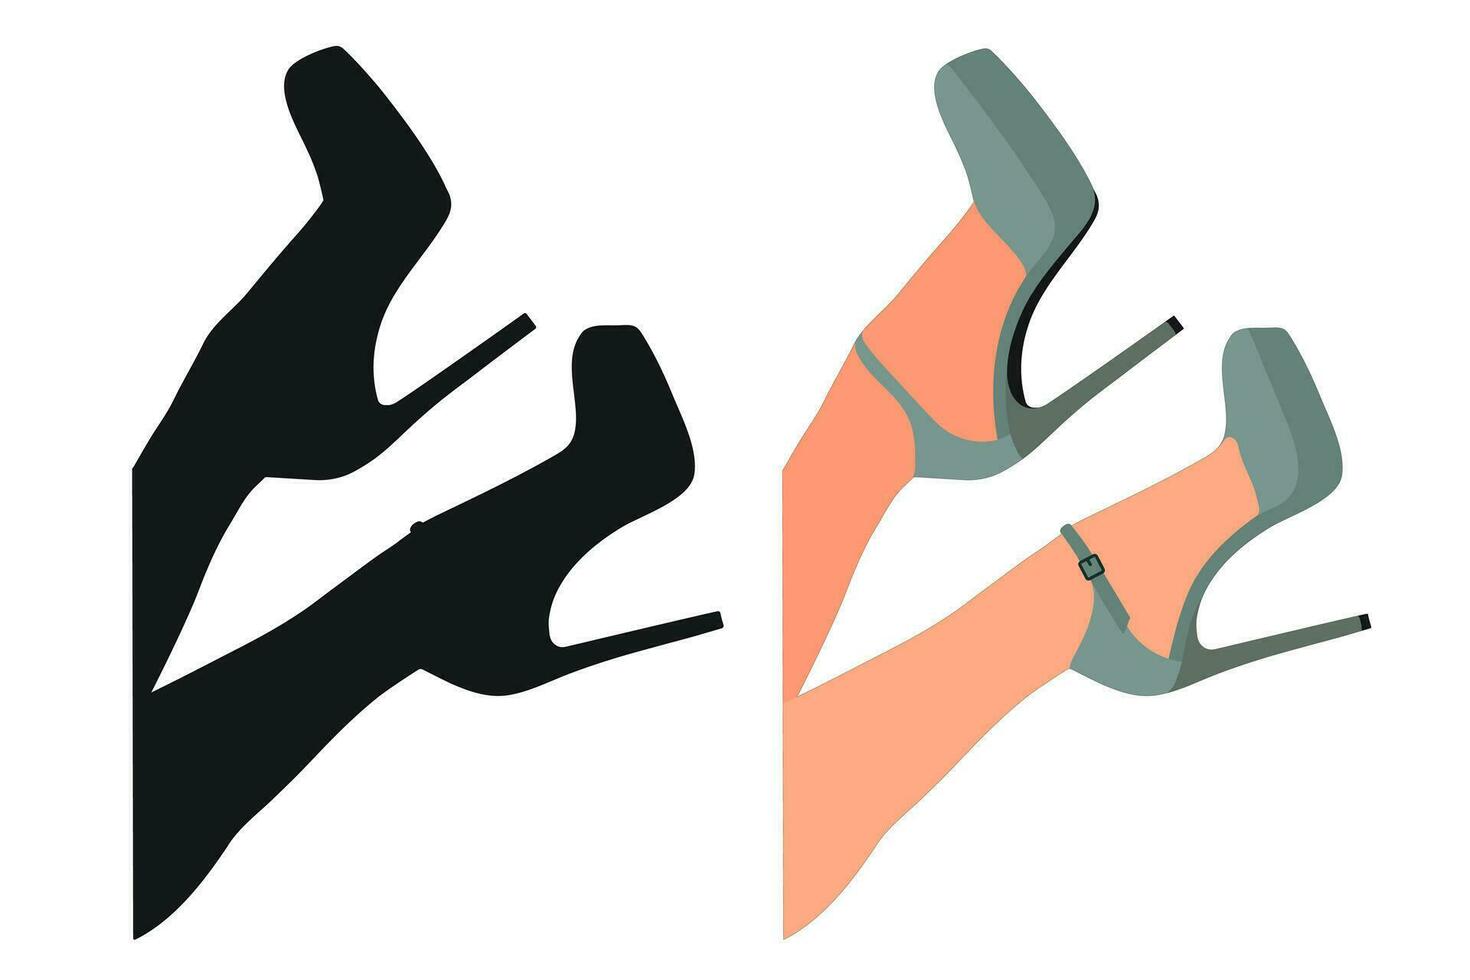 vague image de le silhouette de aux femmes chaussures. des chaussures talons aiguilles, haute talons vecteur